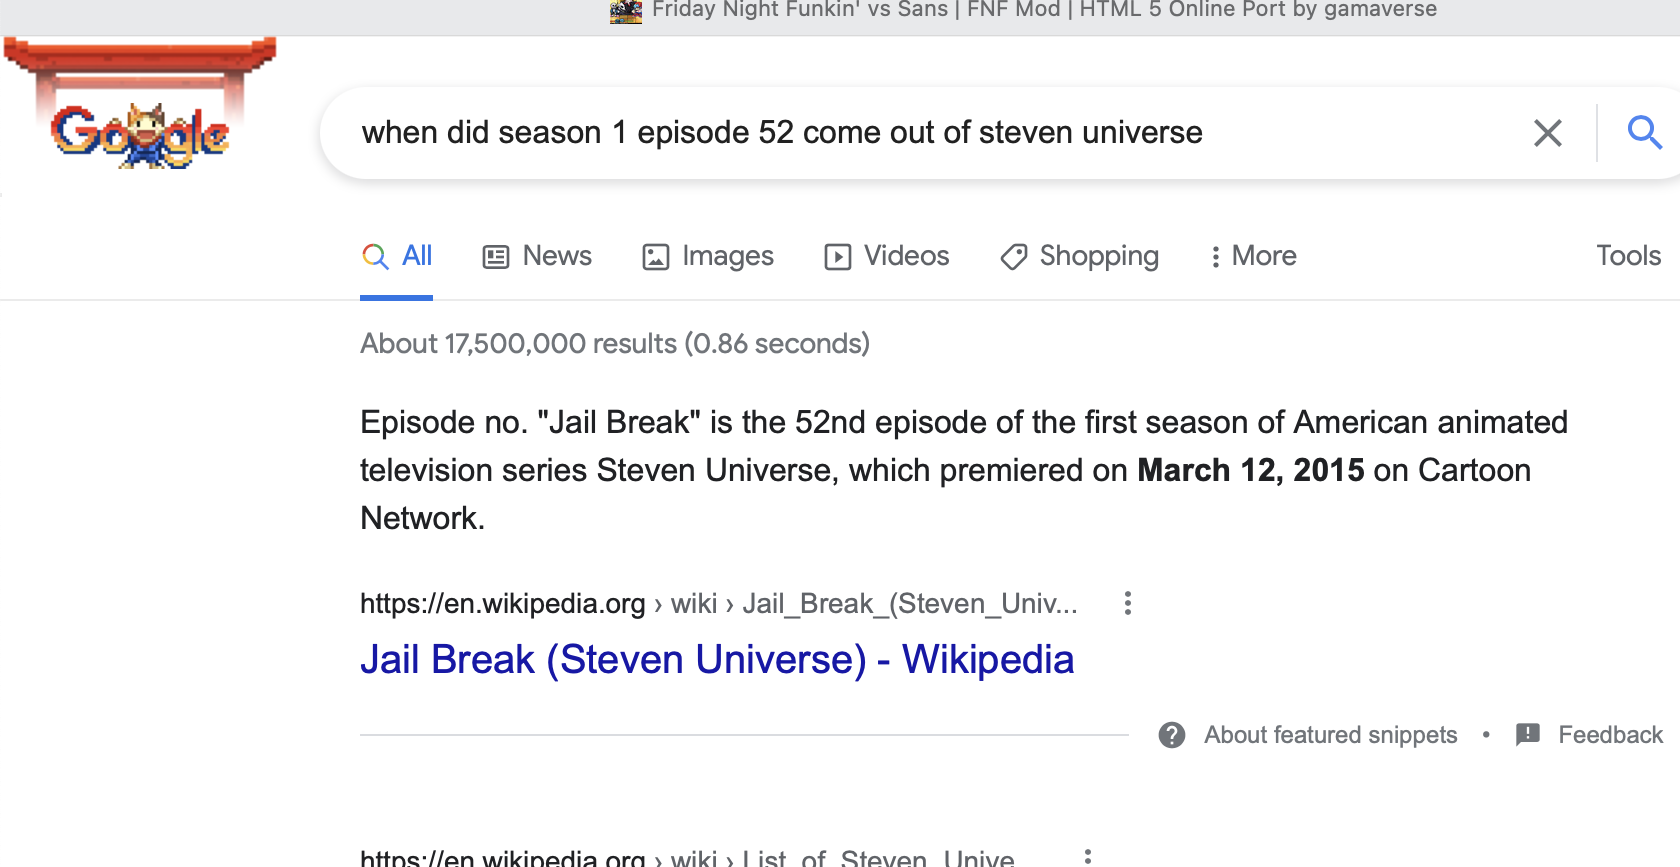 Jail Break (Steven Universe) - Wikipedia